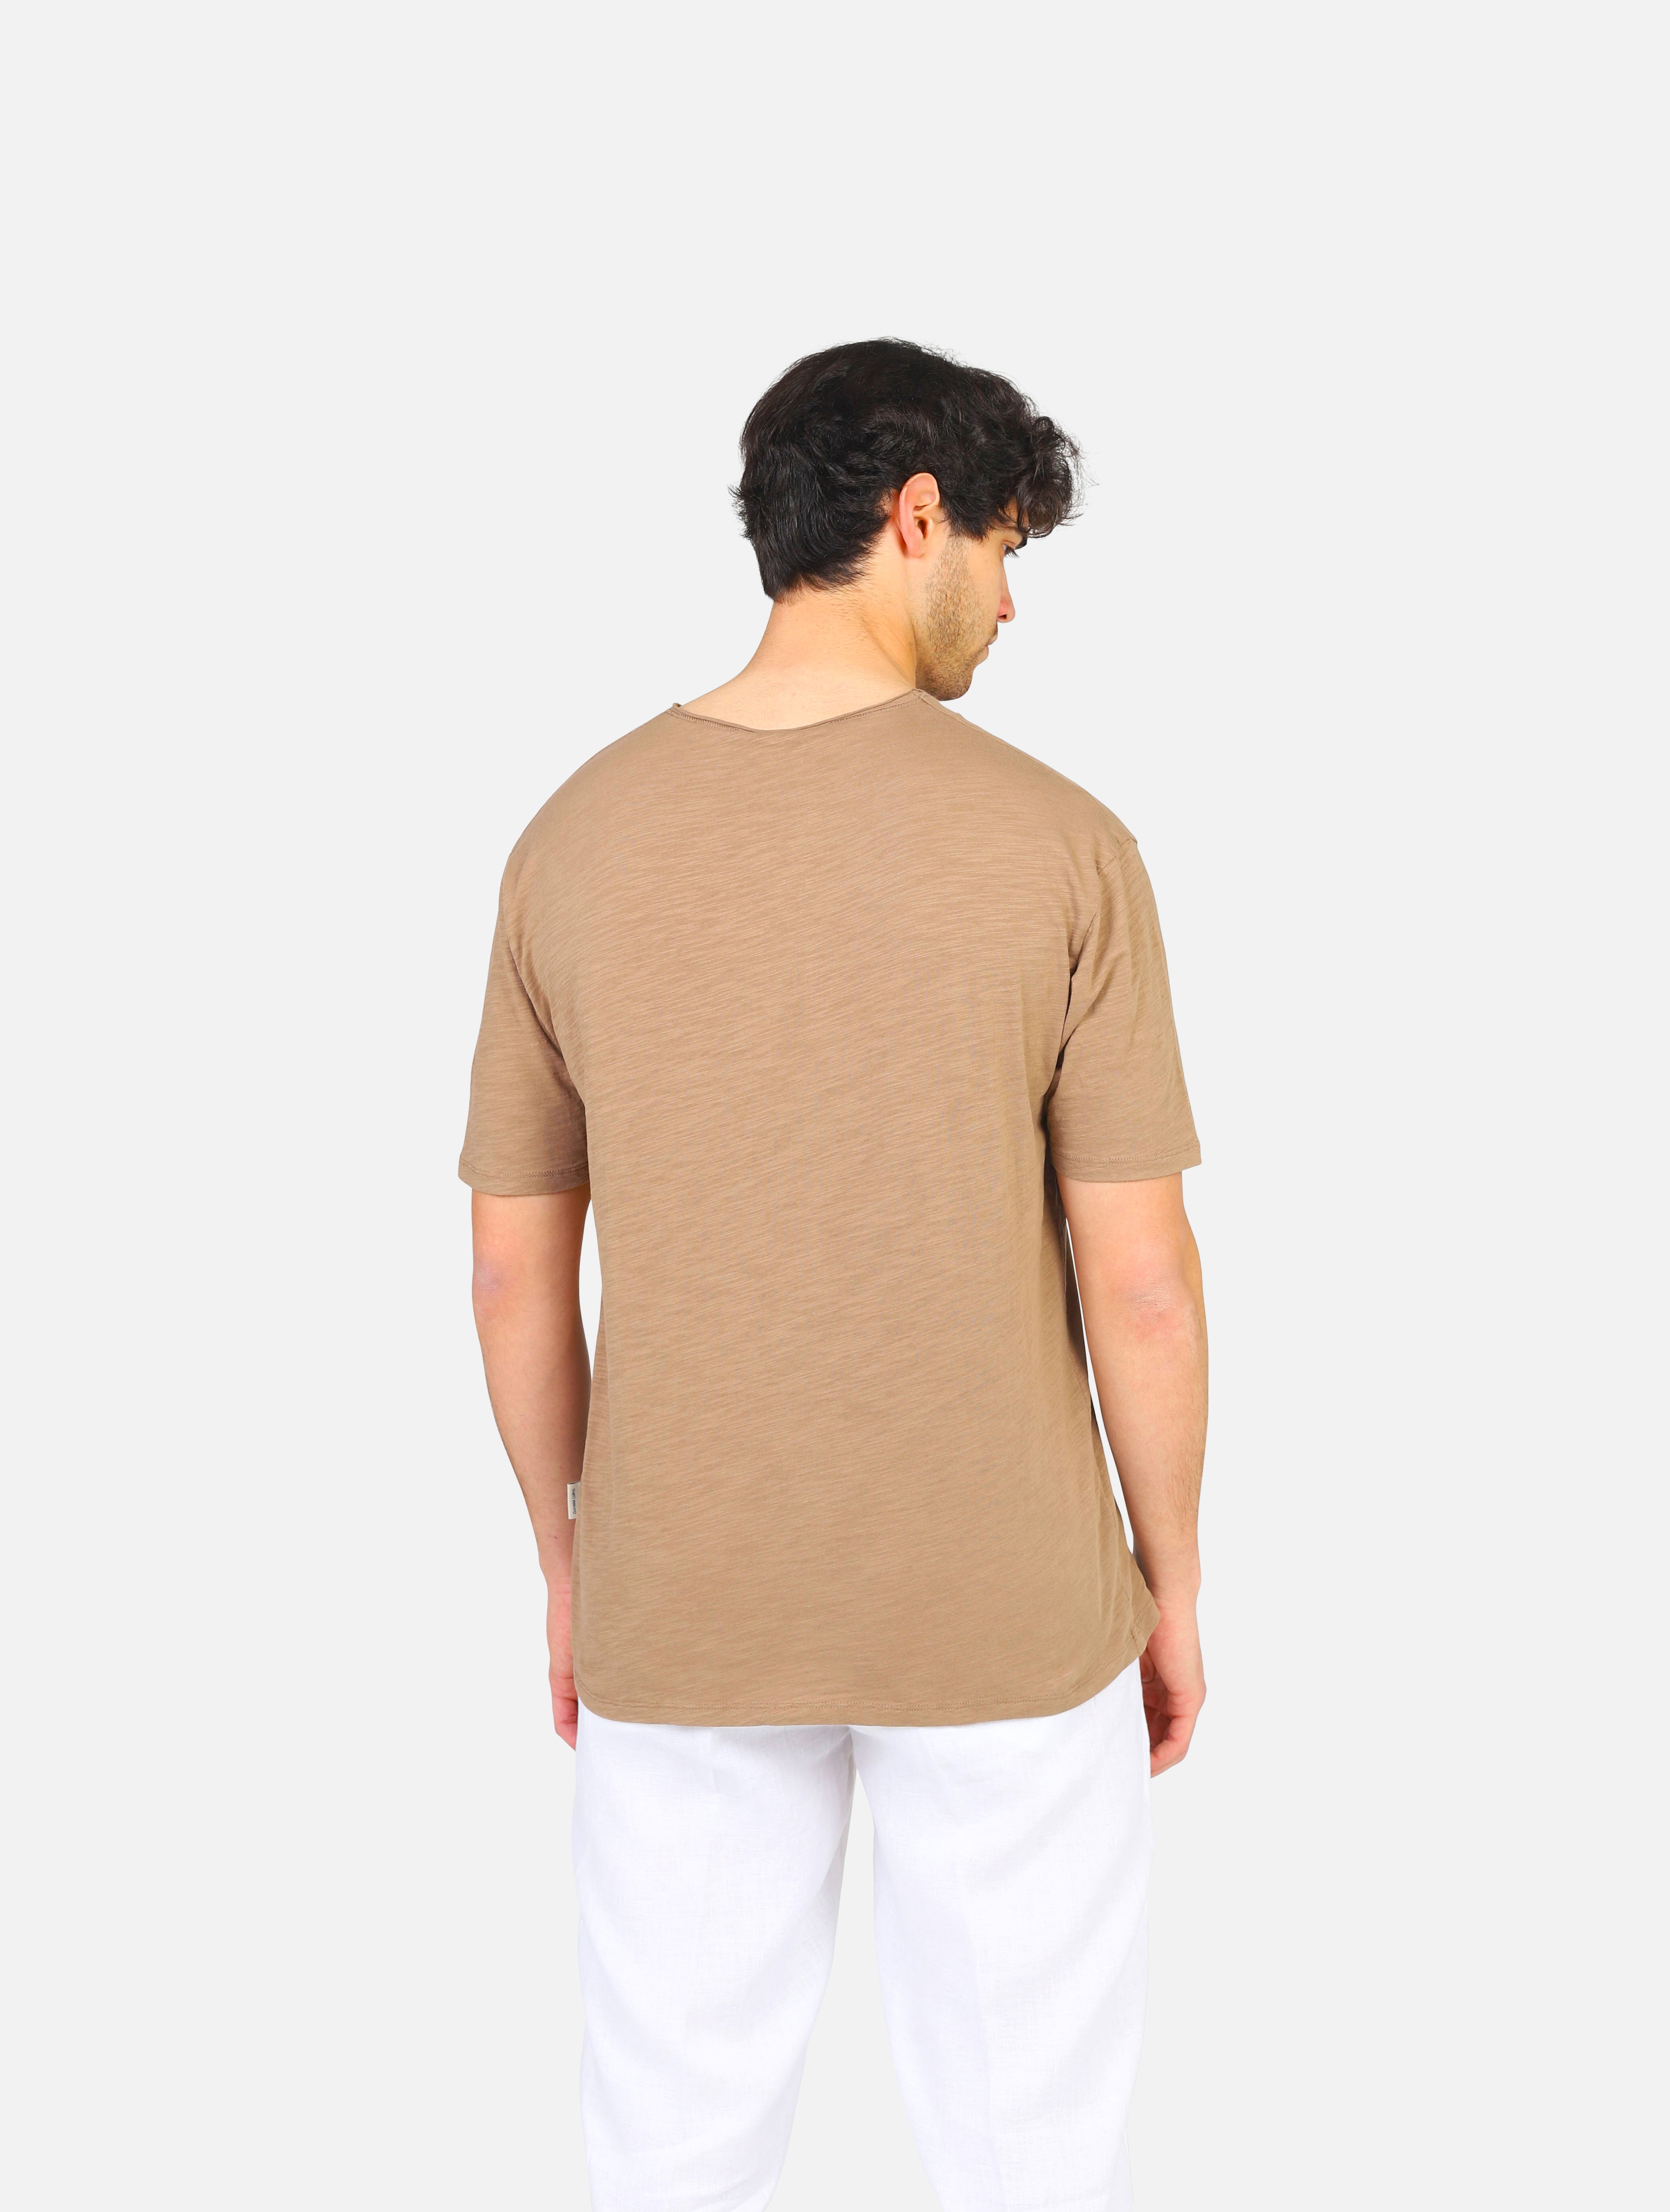 Gianni lupo t-shirt  -  camel man  - 3